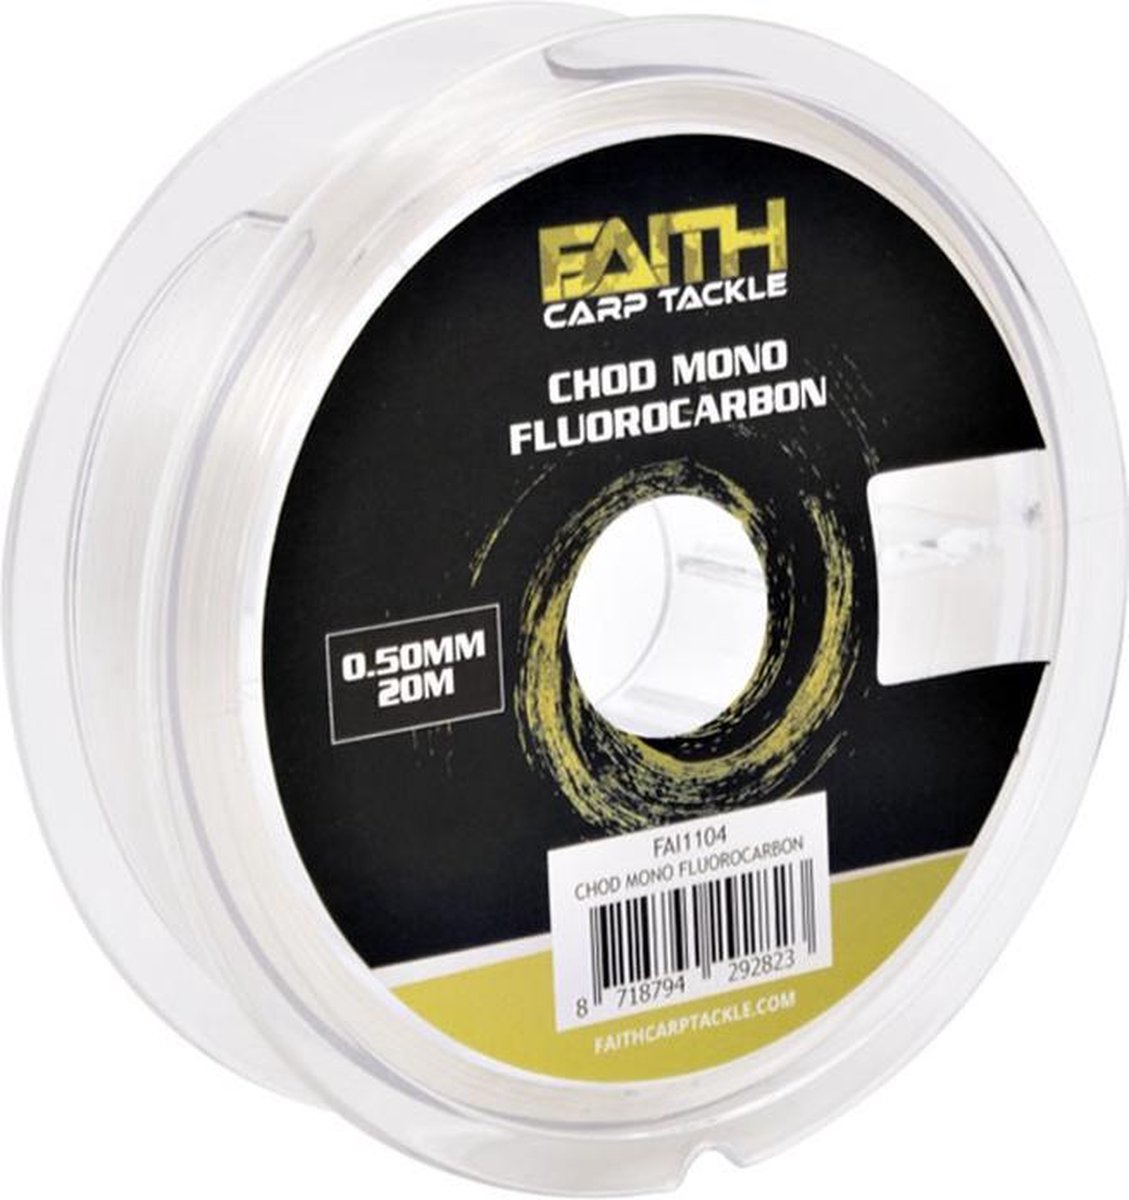 Faith Chod Mono Fluorocarbon - 0.50mm - 20m - Transparant - Faith Carp Tackle